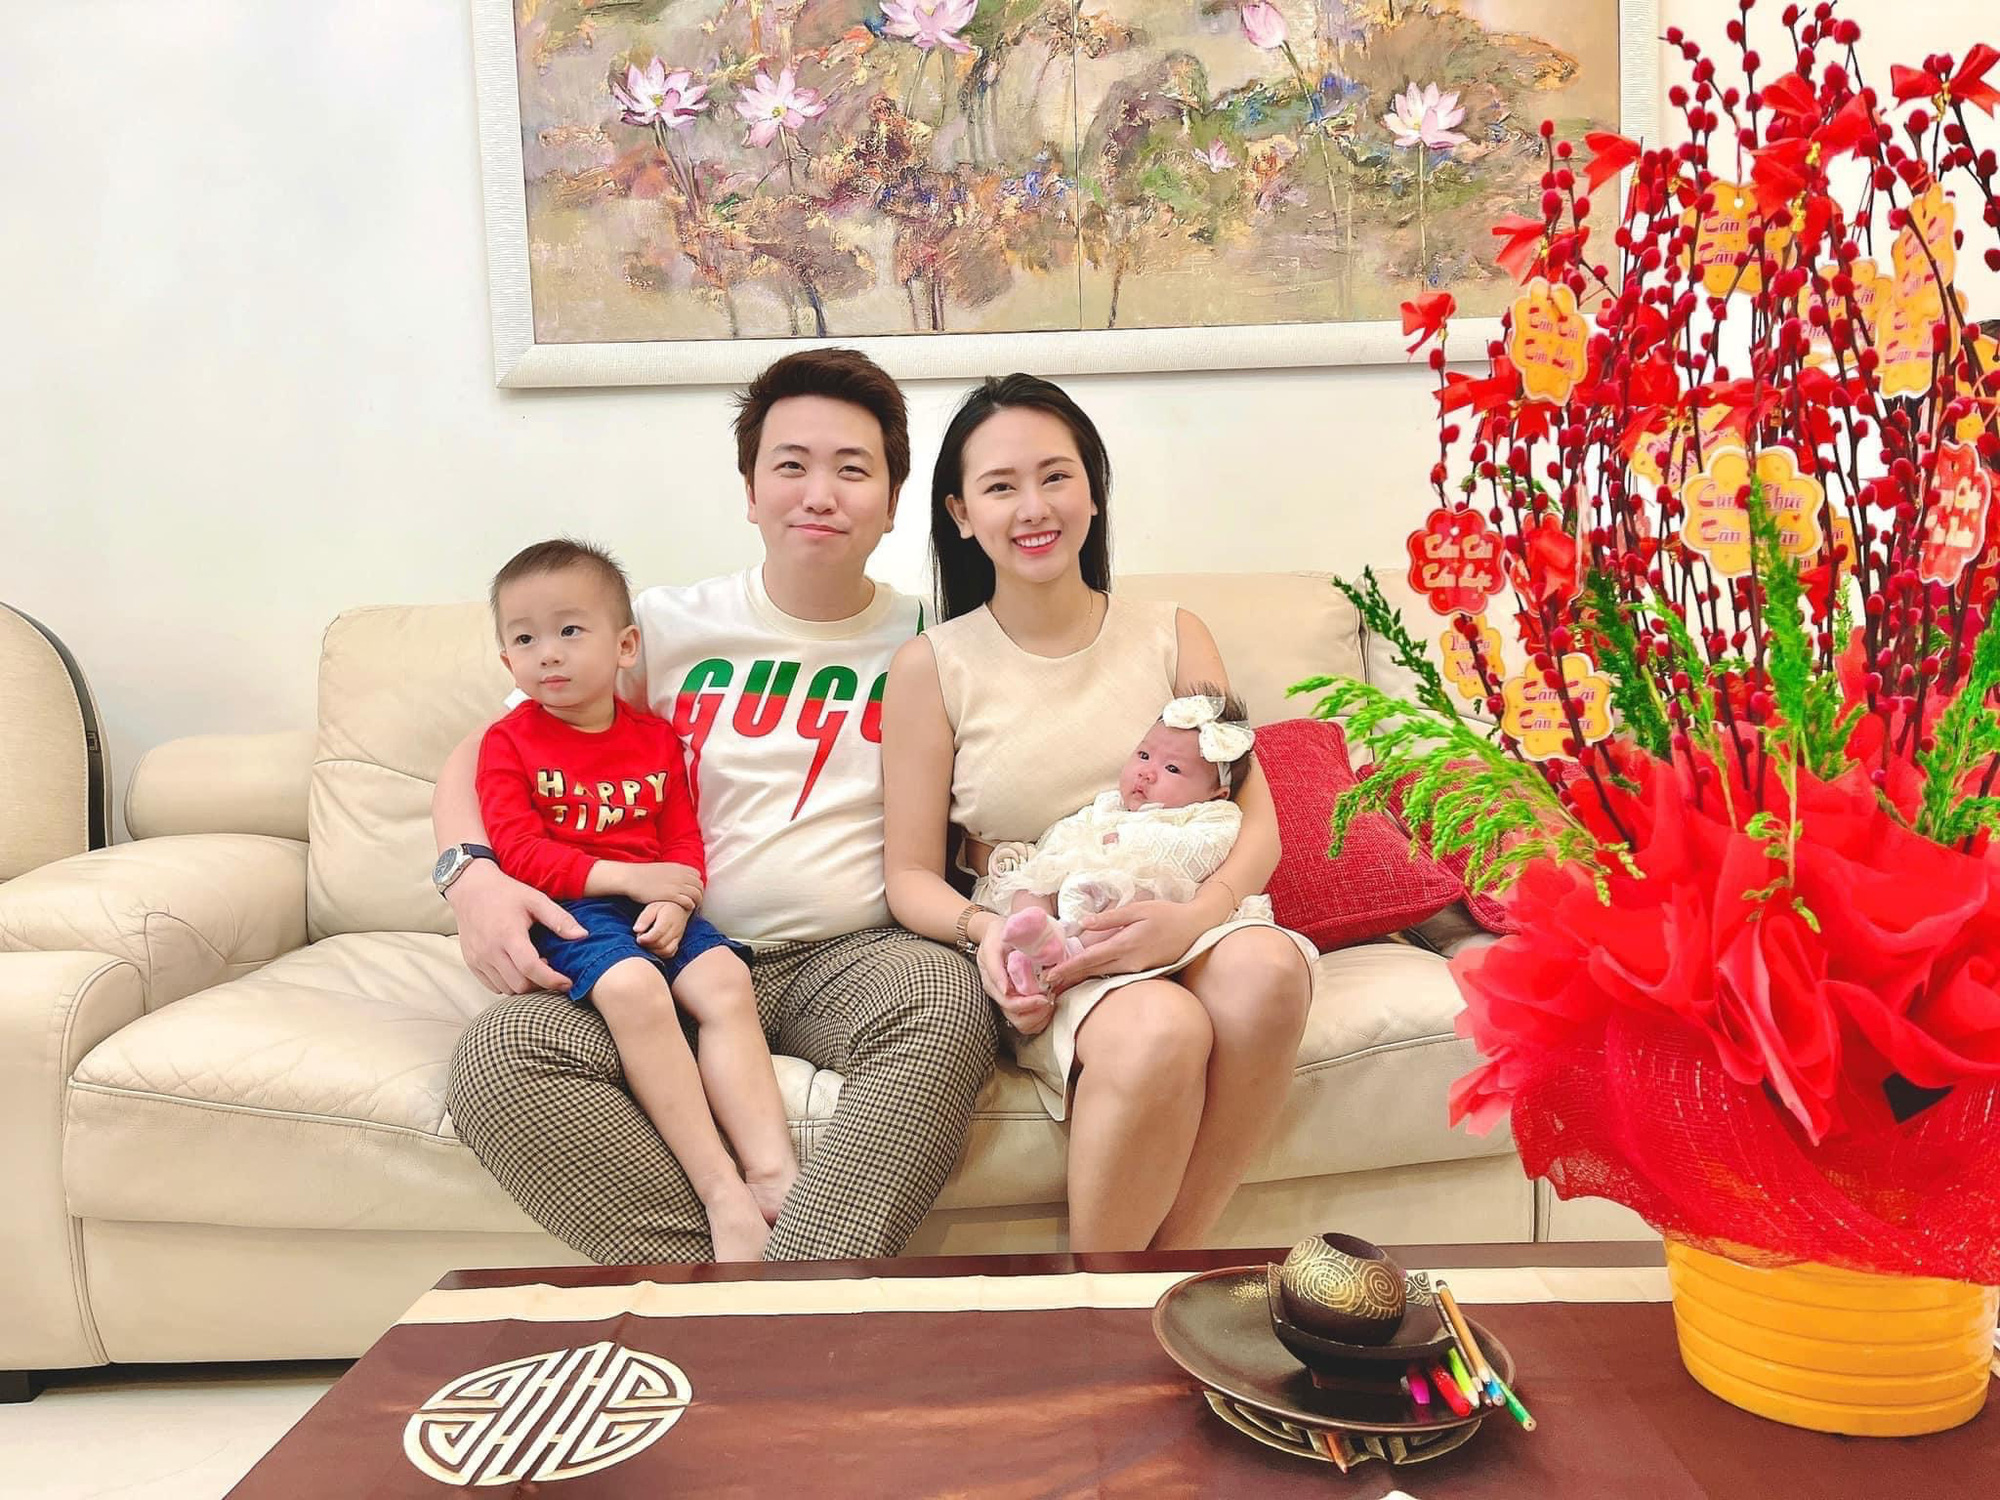 Nguyễn Cao Kim Anh - Nữ đại gia tặng chồng siêu xe và hé lộ khối tài sản trăm tỷ - Ảnh 3.